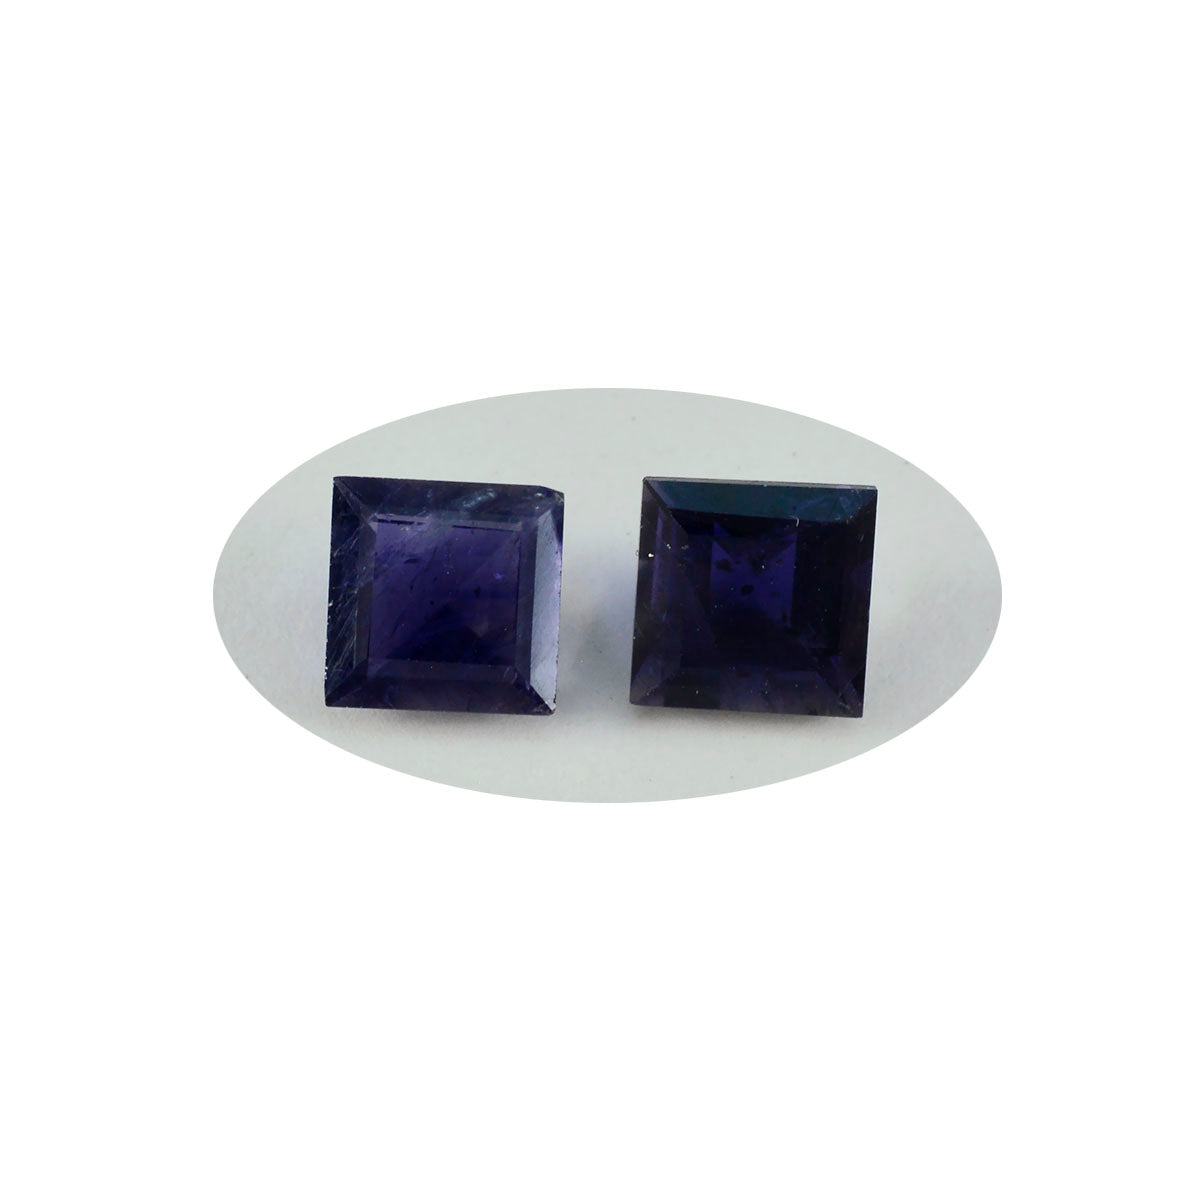 Riyogems 1 pieza de iolita azul facetada de 13x13 mm con forma cuadrada, gemas de calidad atractivas